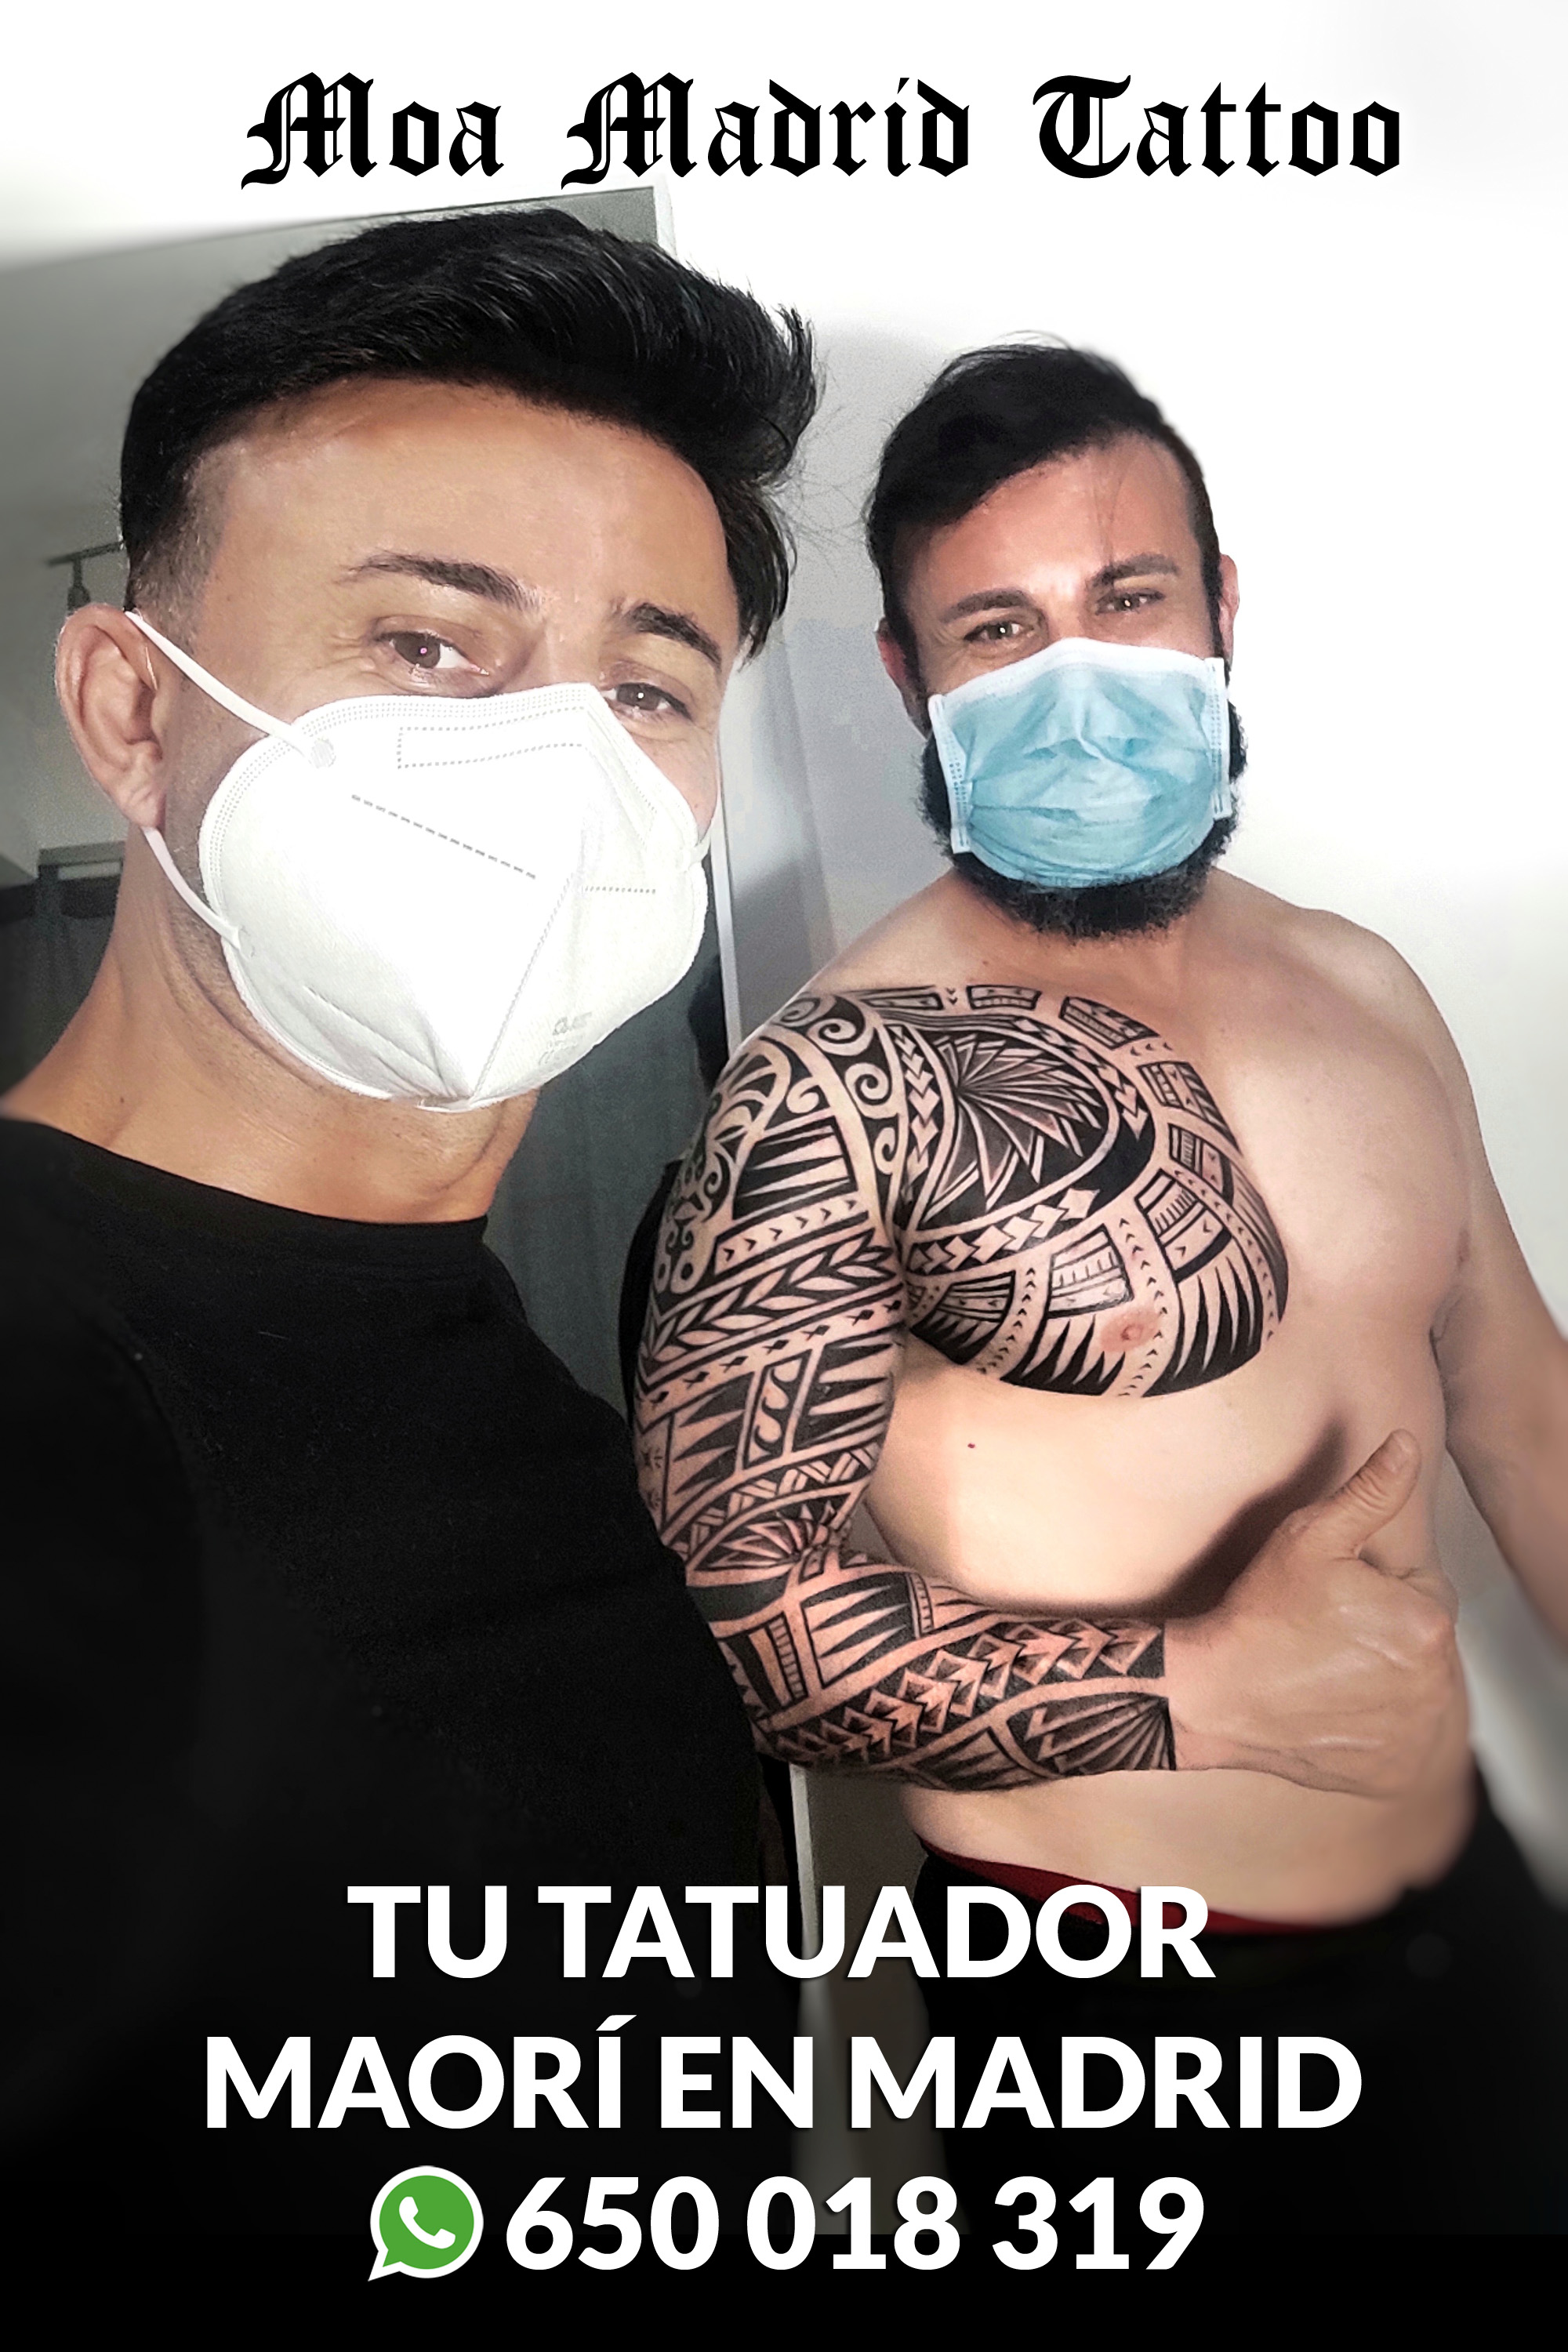 Tatuador maori en Madrid WhatsApp 650018319 clientes satisfechos